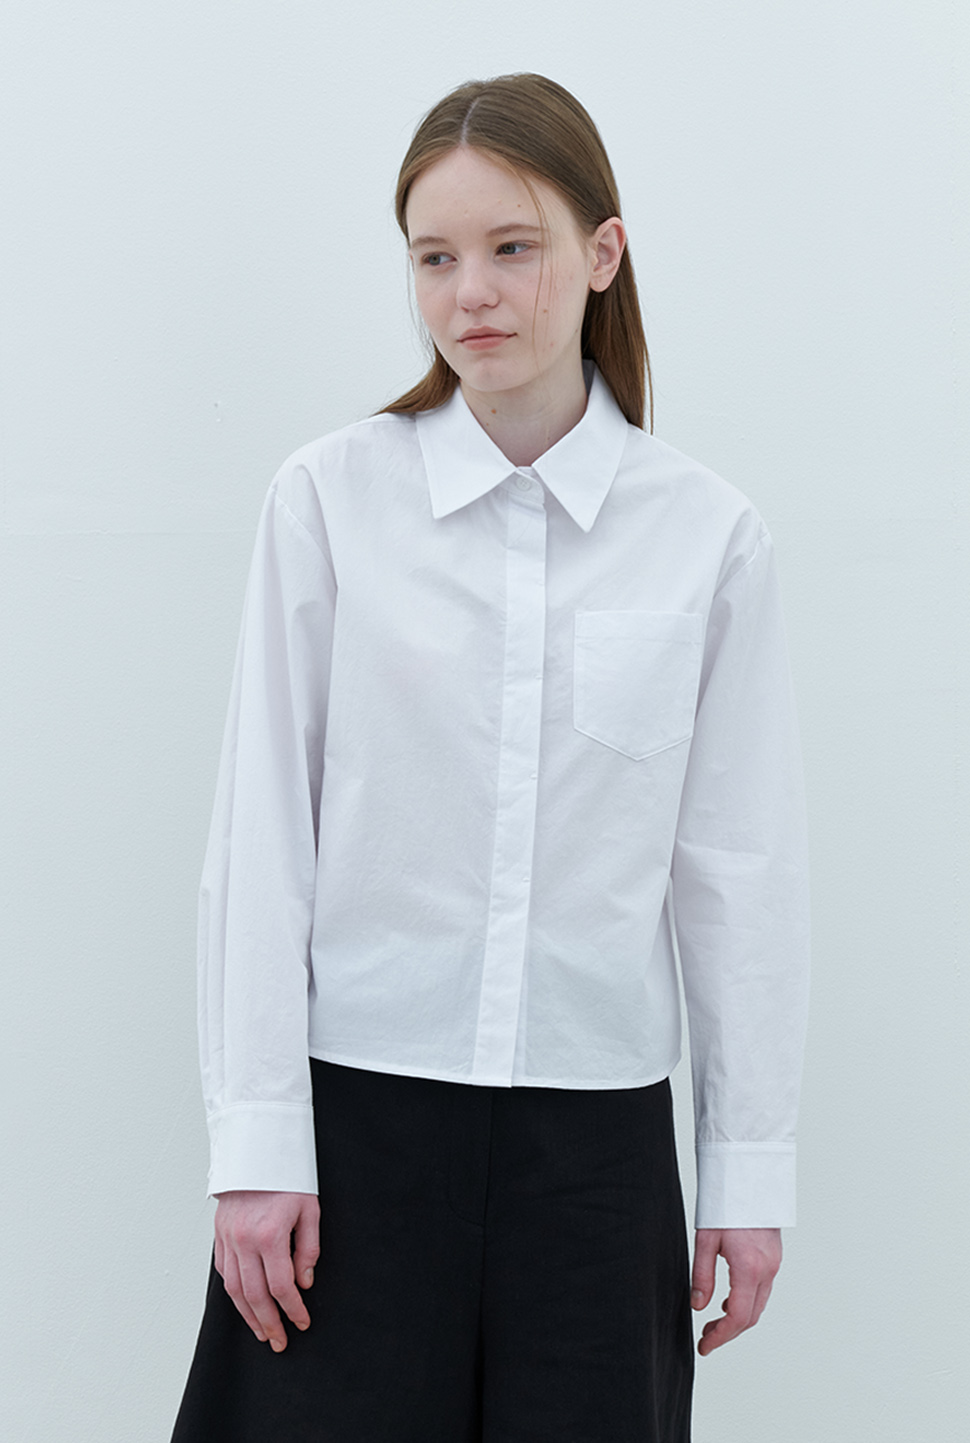 cotton shirts-white